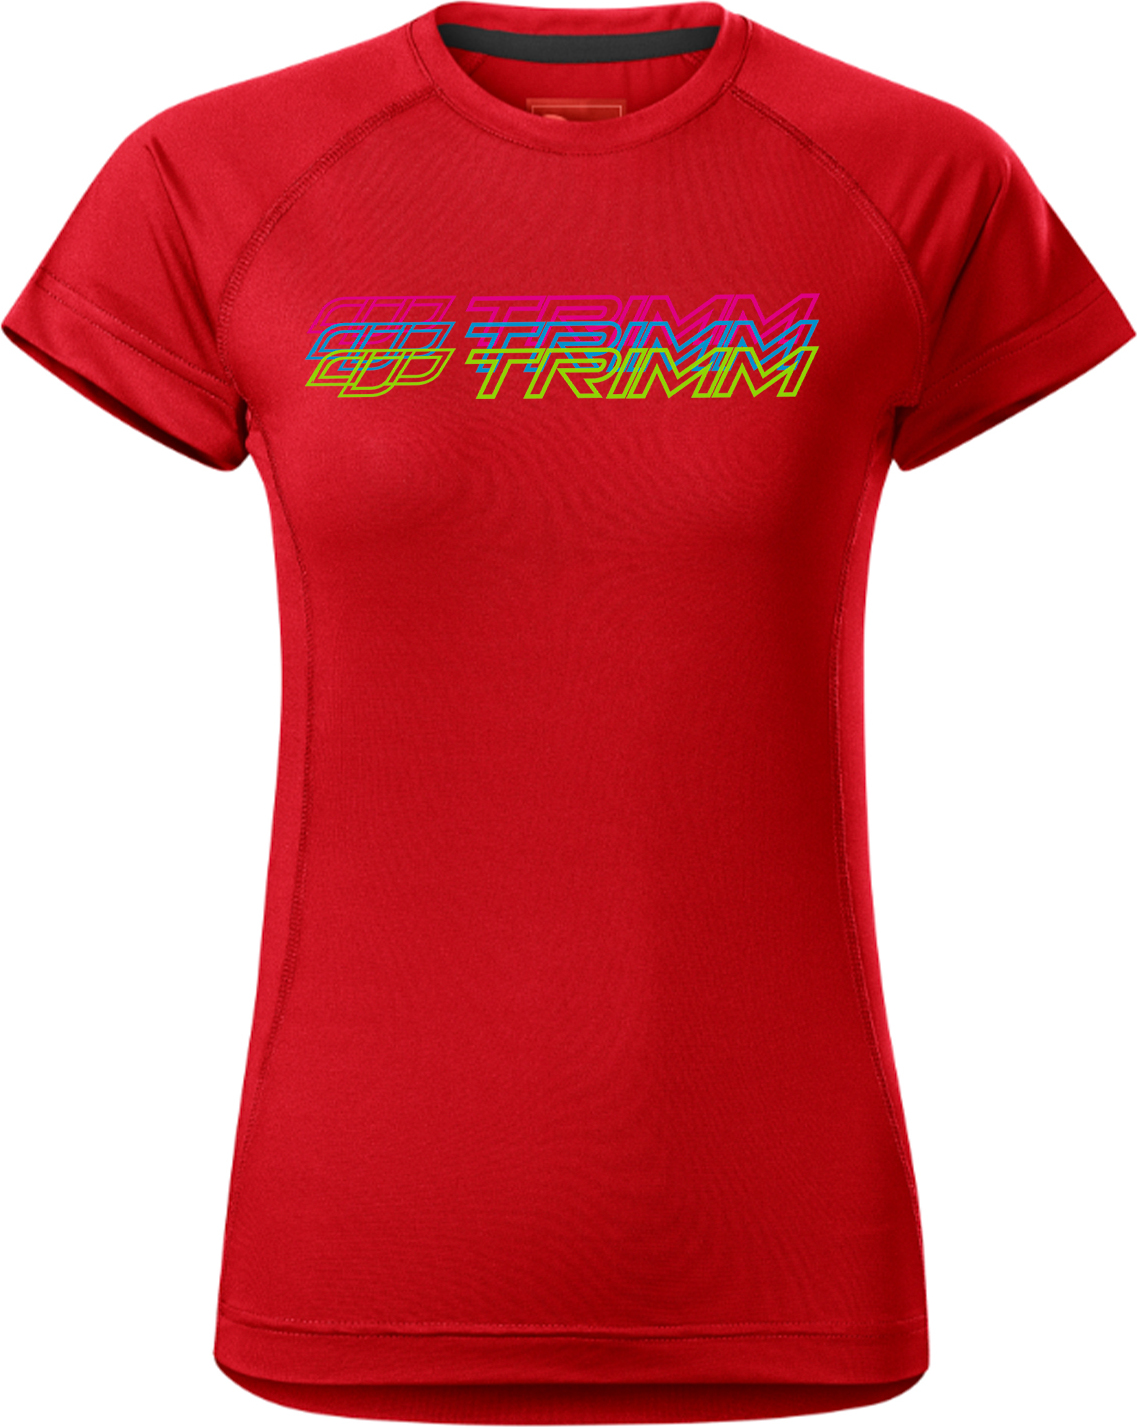 Dámské tričko TRIMM Destiny Lady červené Velikost: XL, Barva: red